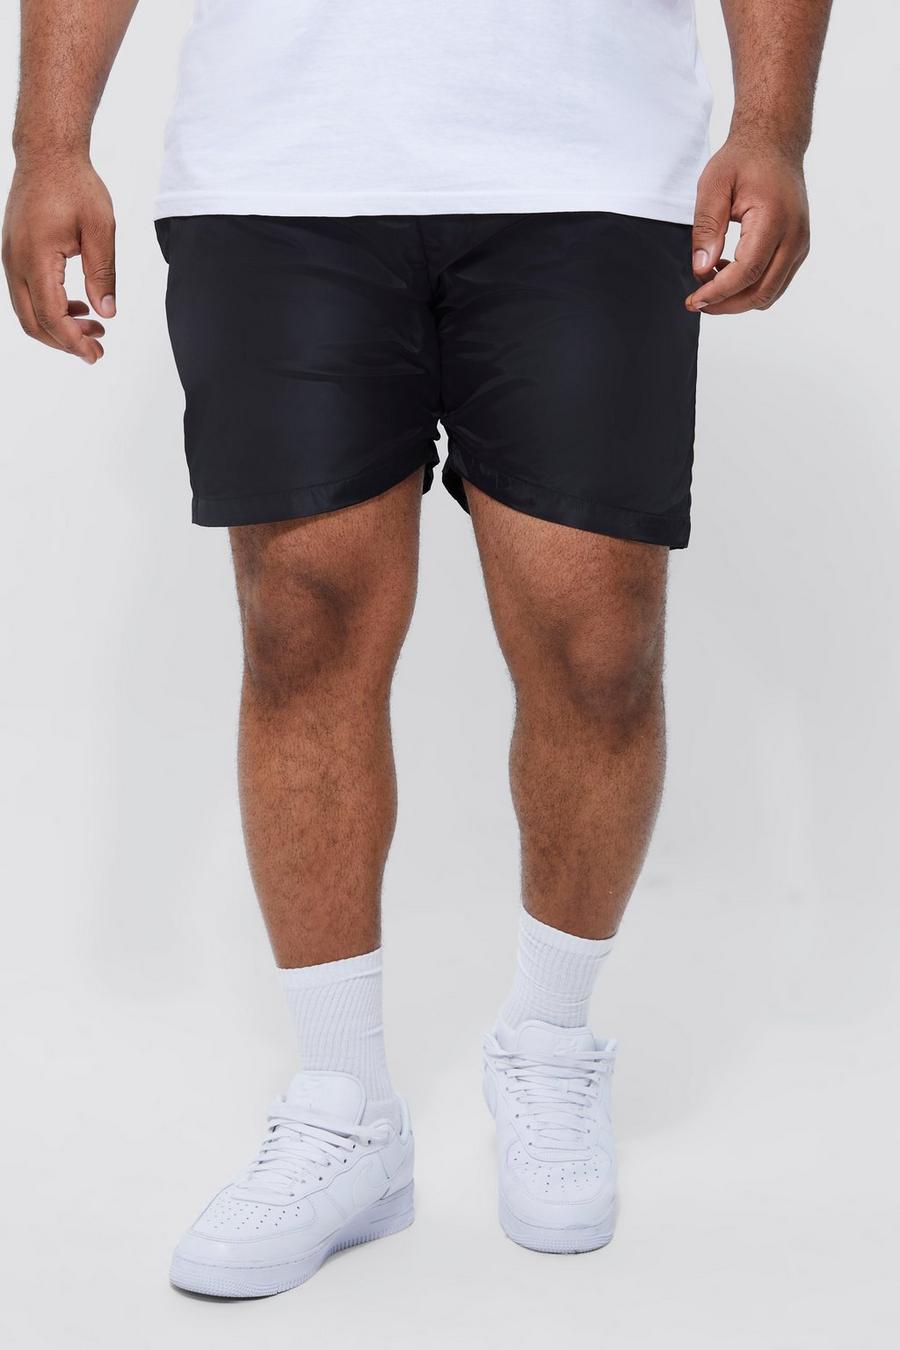 Pantaloncini Plus Size con vita elasticizzata e fermacorde, Black negro